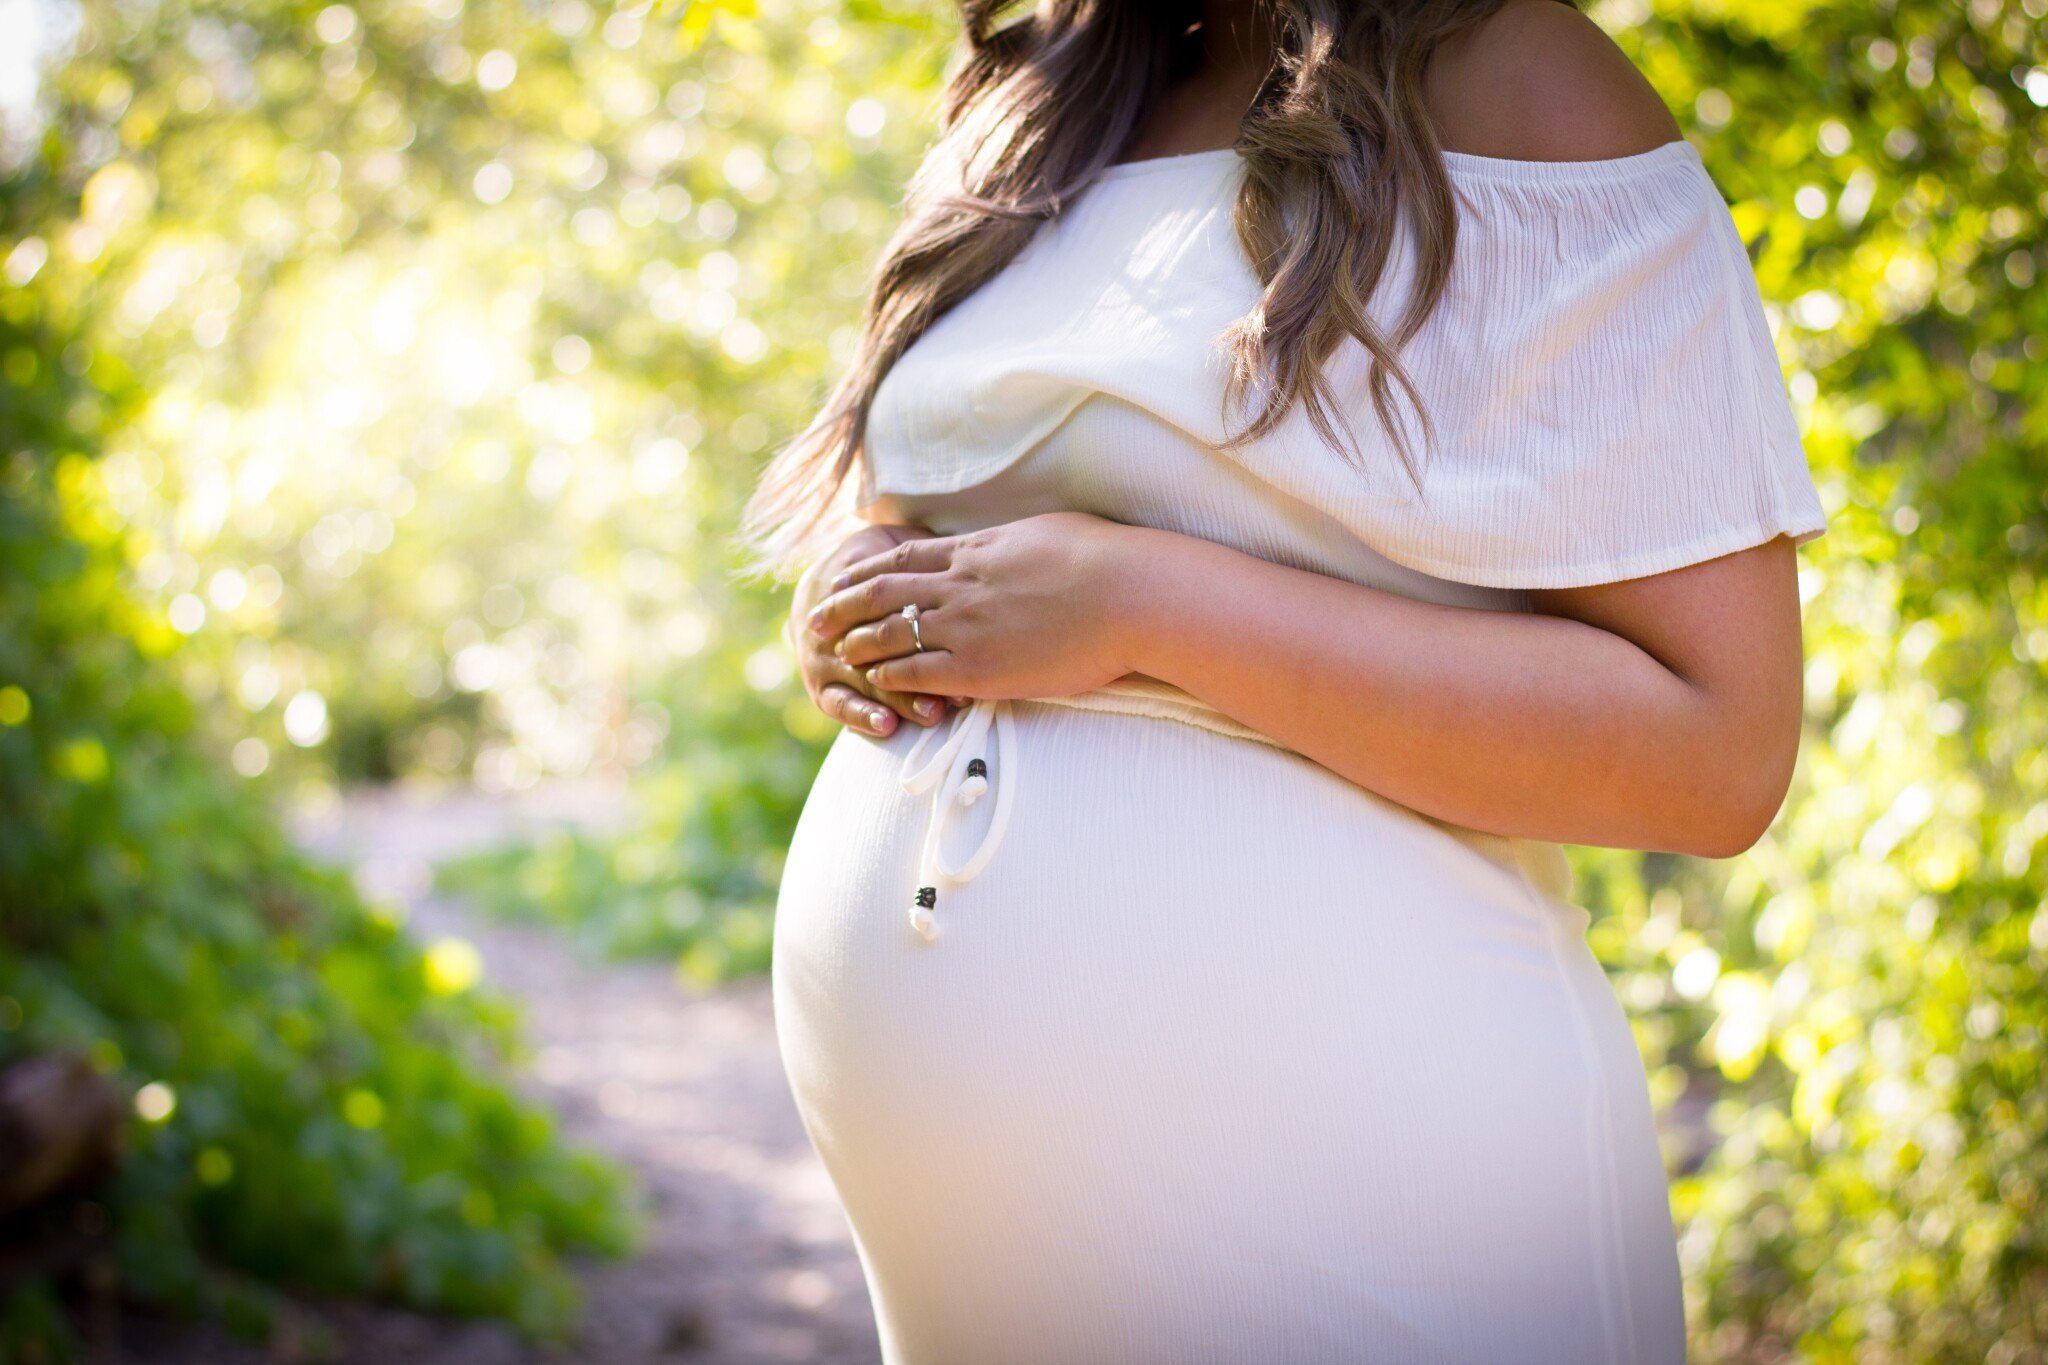 Těhotenství a porod v nejvyšším komfortu. Trend prémiové péče roste krizím navzdory